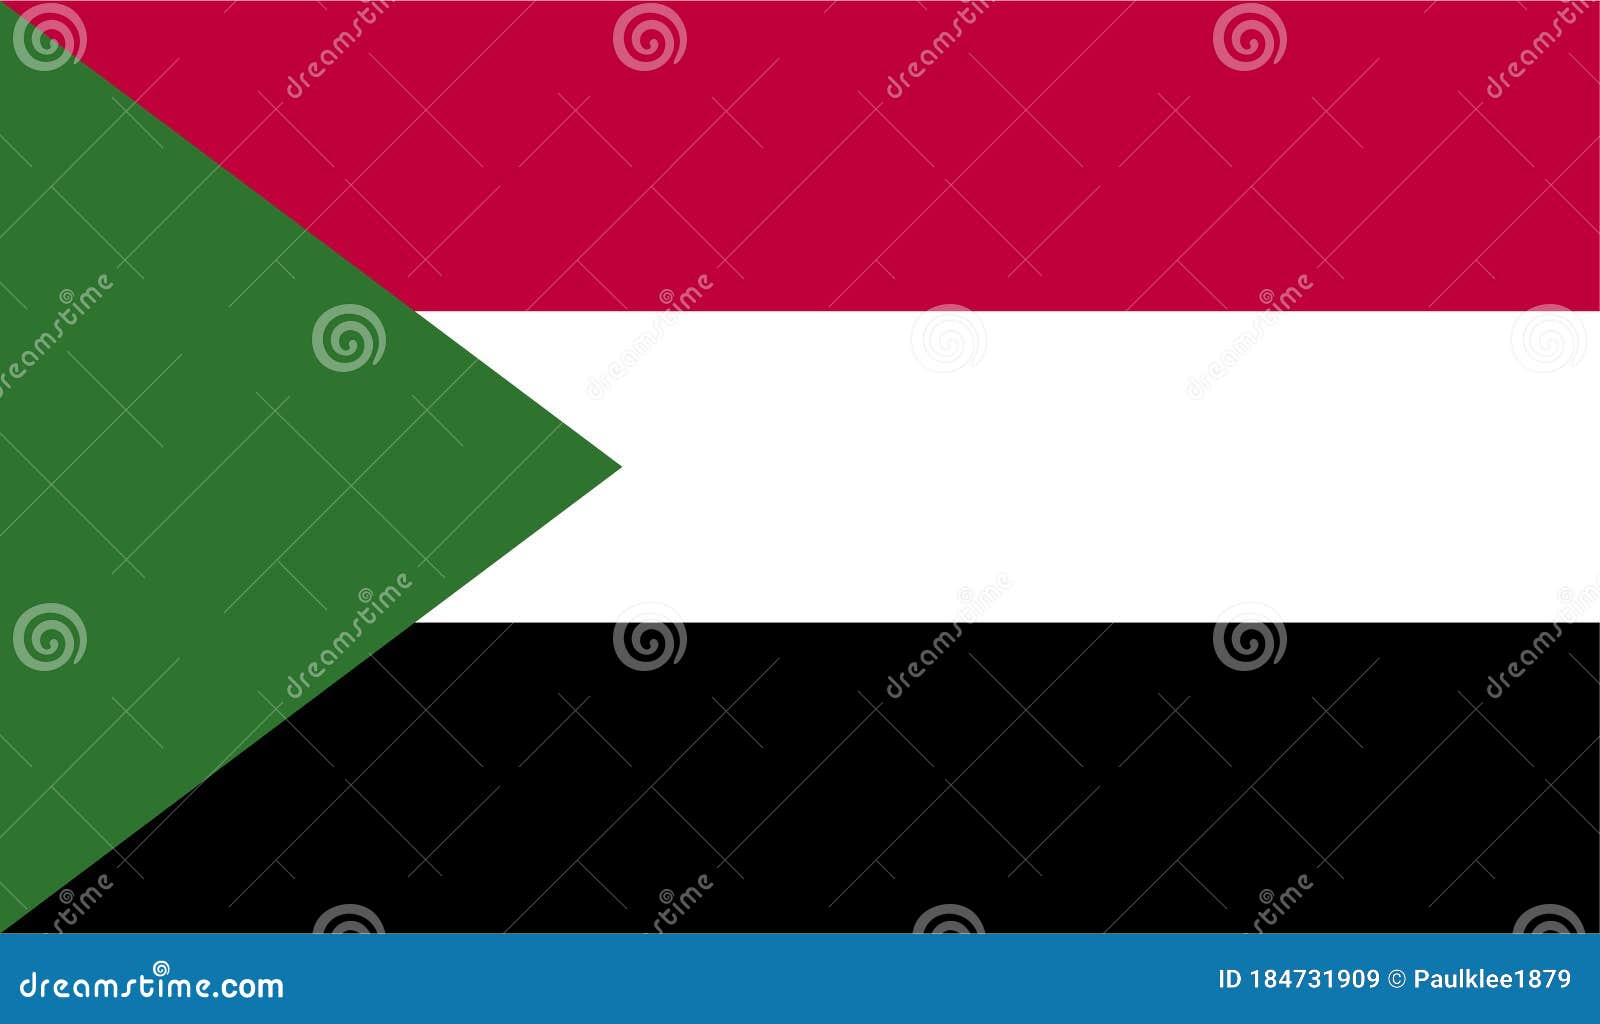 sudan flag   eps